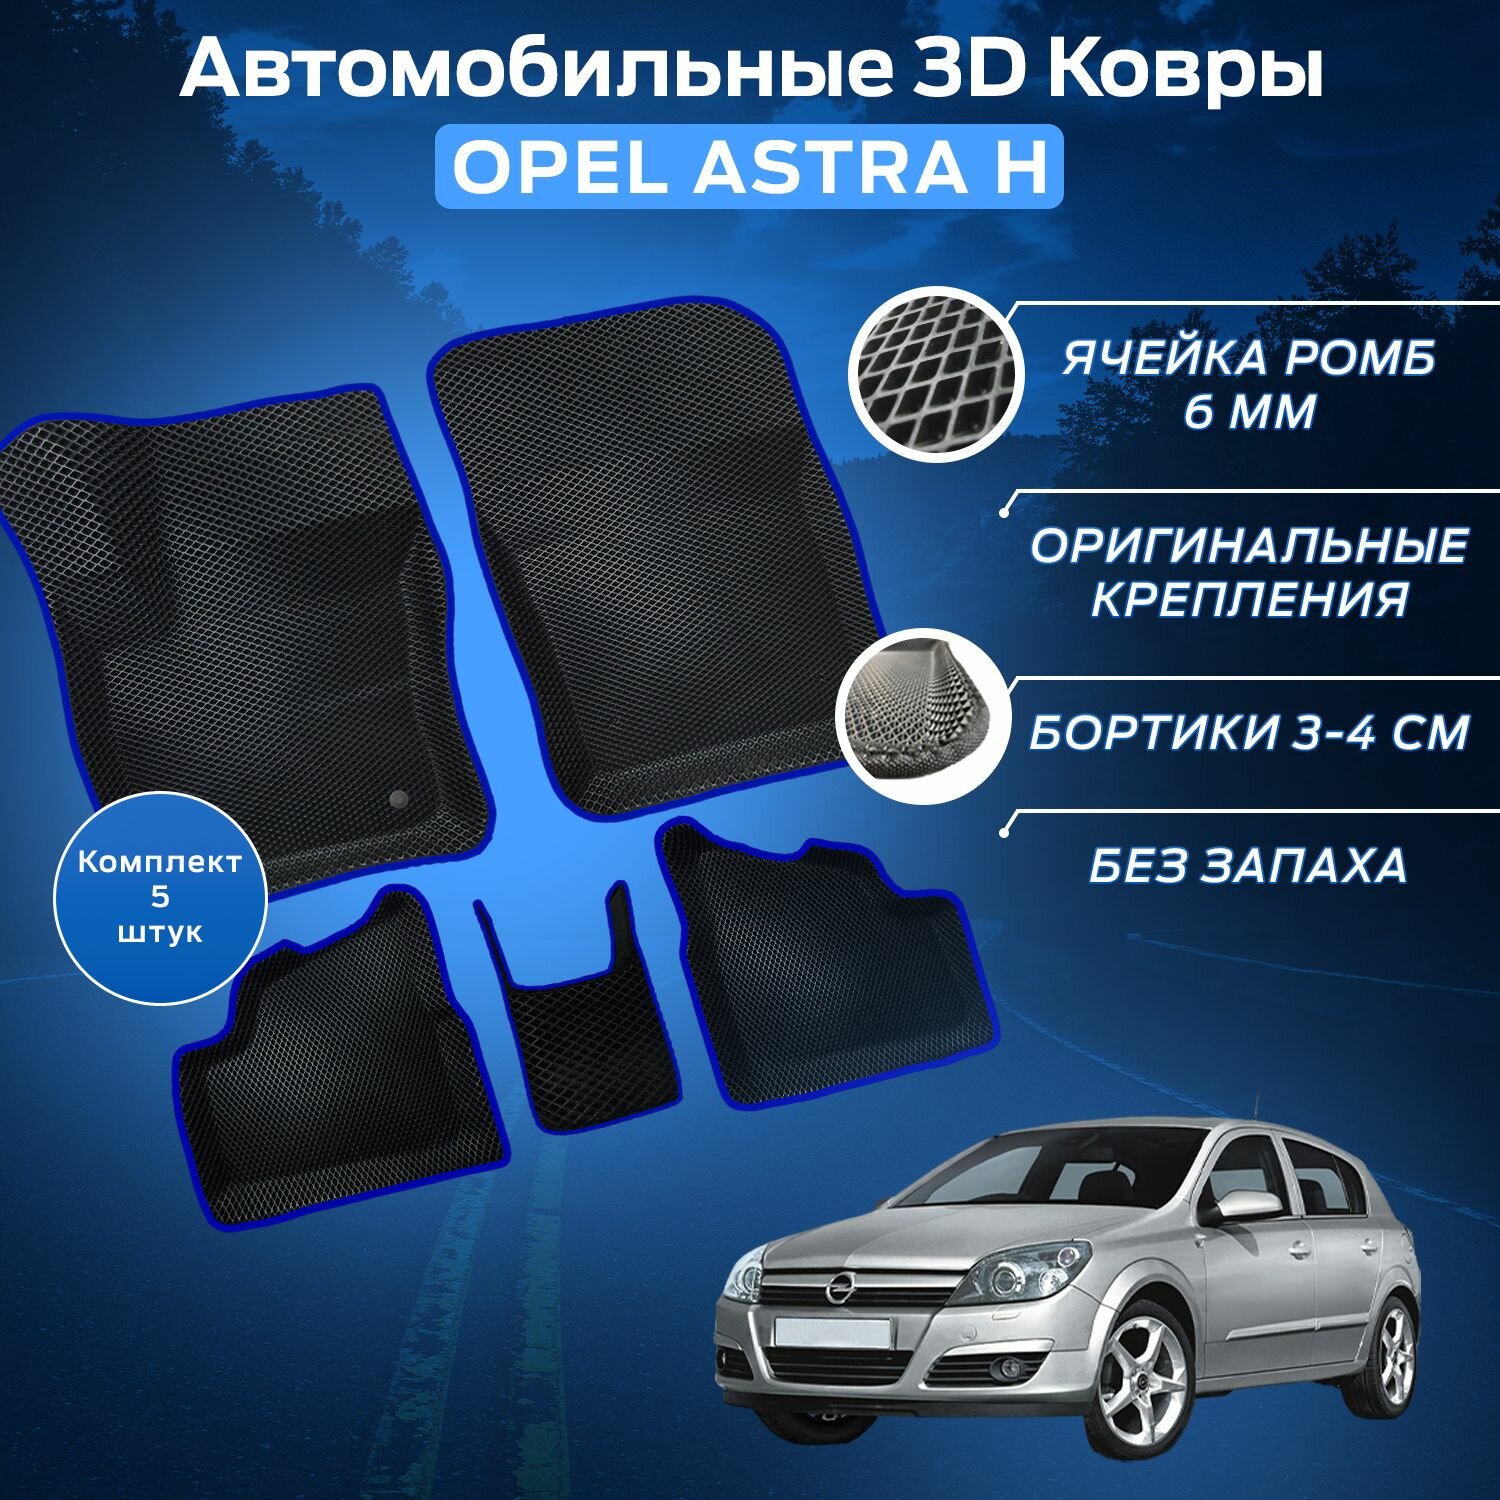 Пресс-EVA 3Д Ковры Опель Астра Н (Ева, эва, коврики с бортами) Opel Astra H / Синие